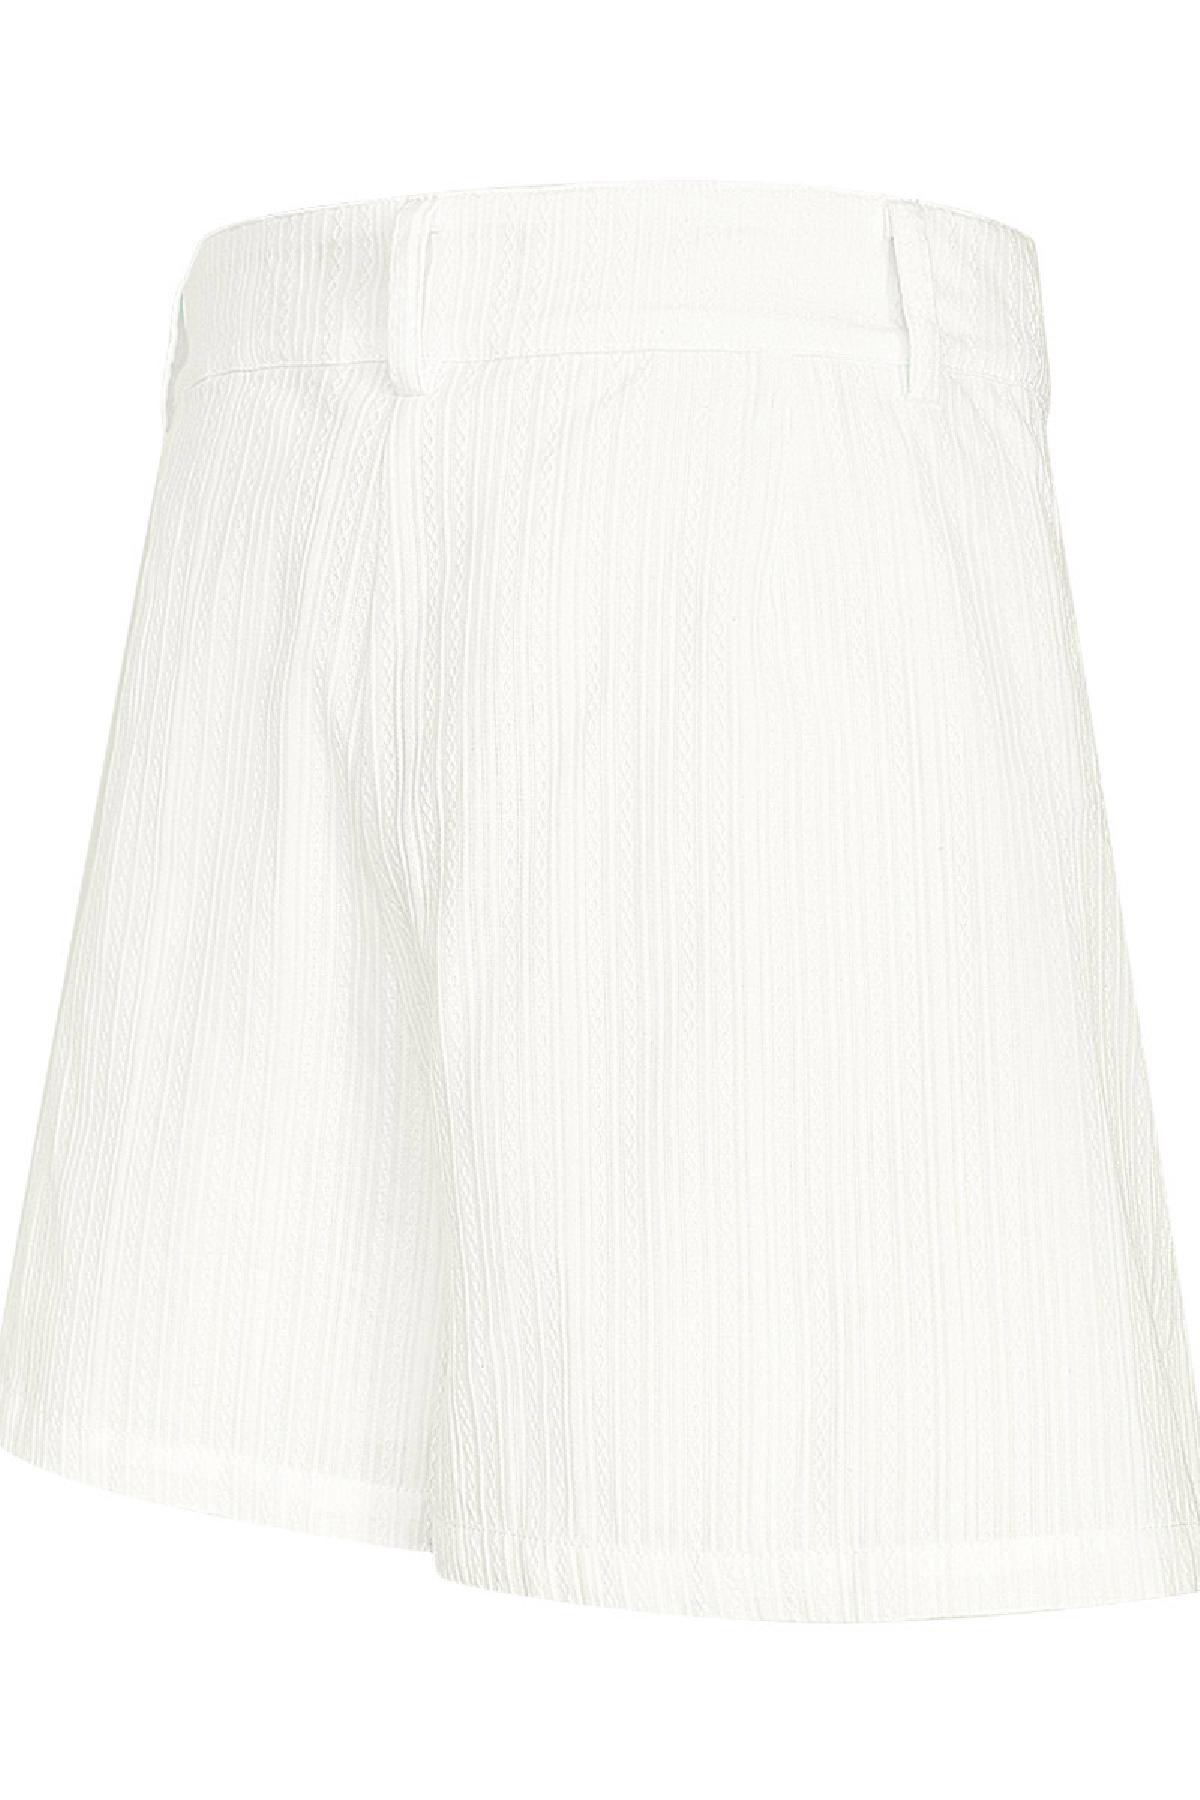 Pantalón corto detalle botón - blanco M h5 Imagen6